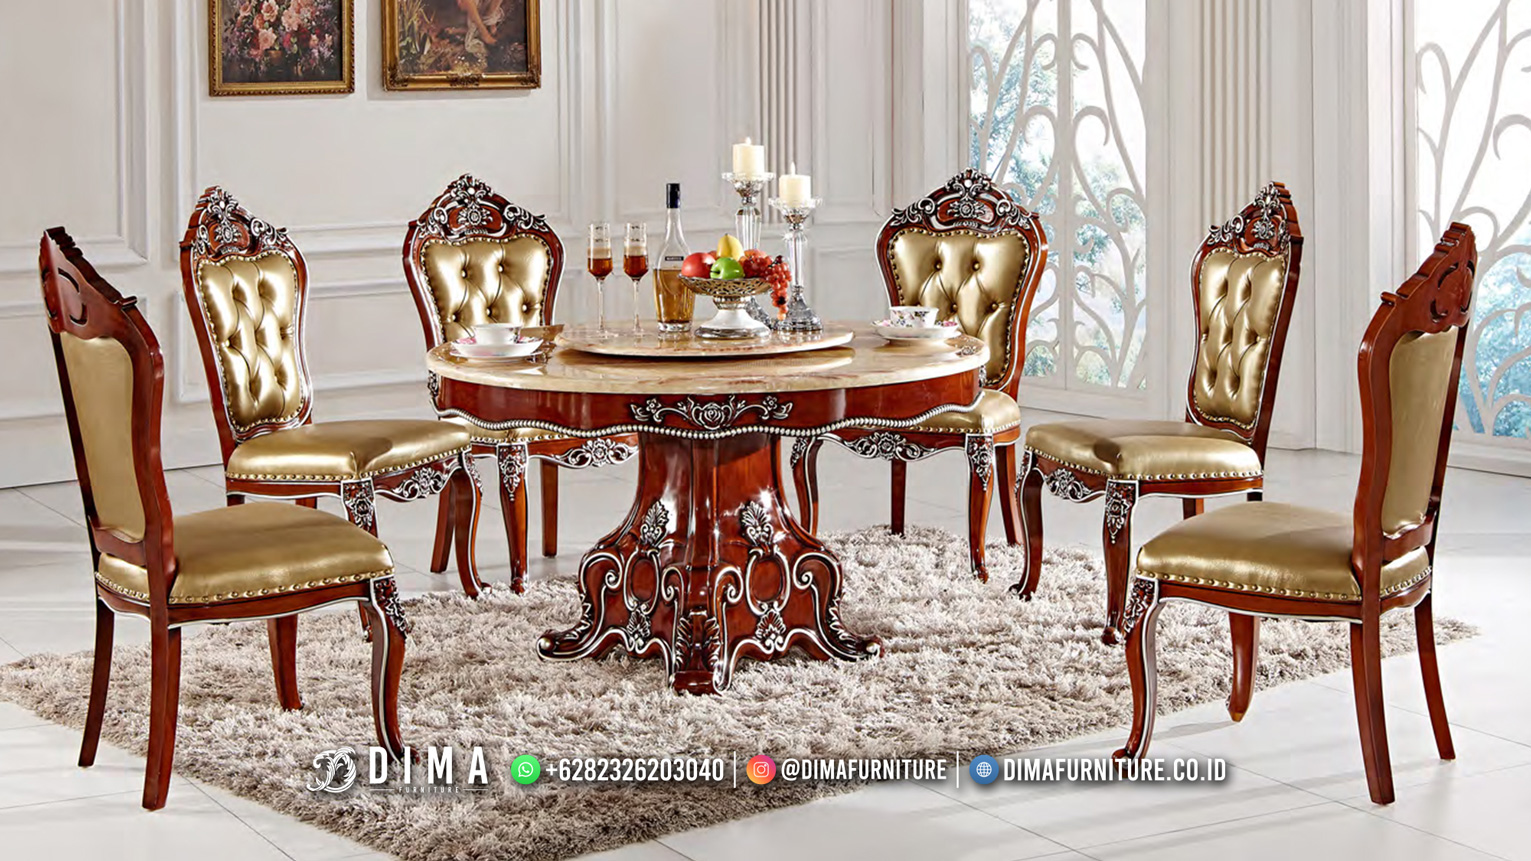 New Furniture Design Meja Makan Mewah Jepara Terbaru BT-1800